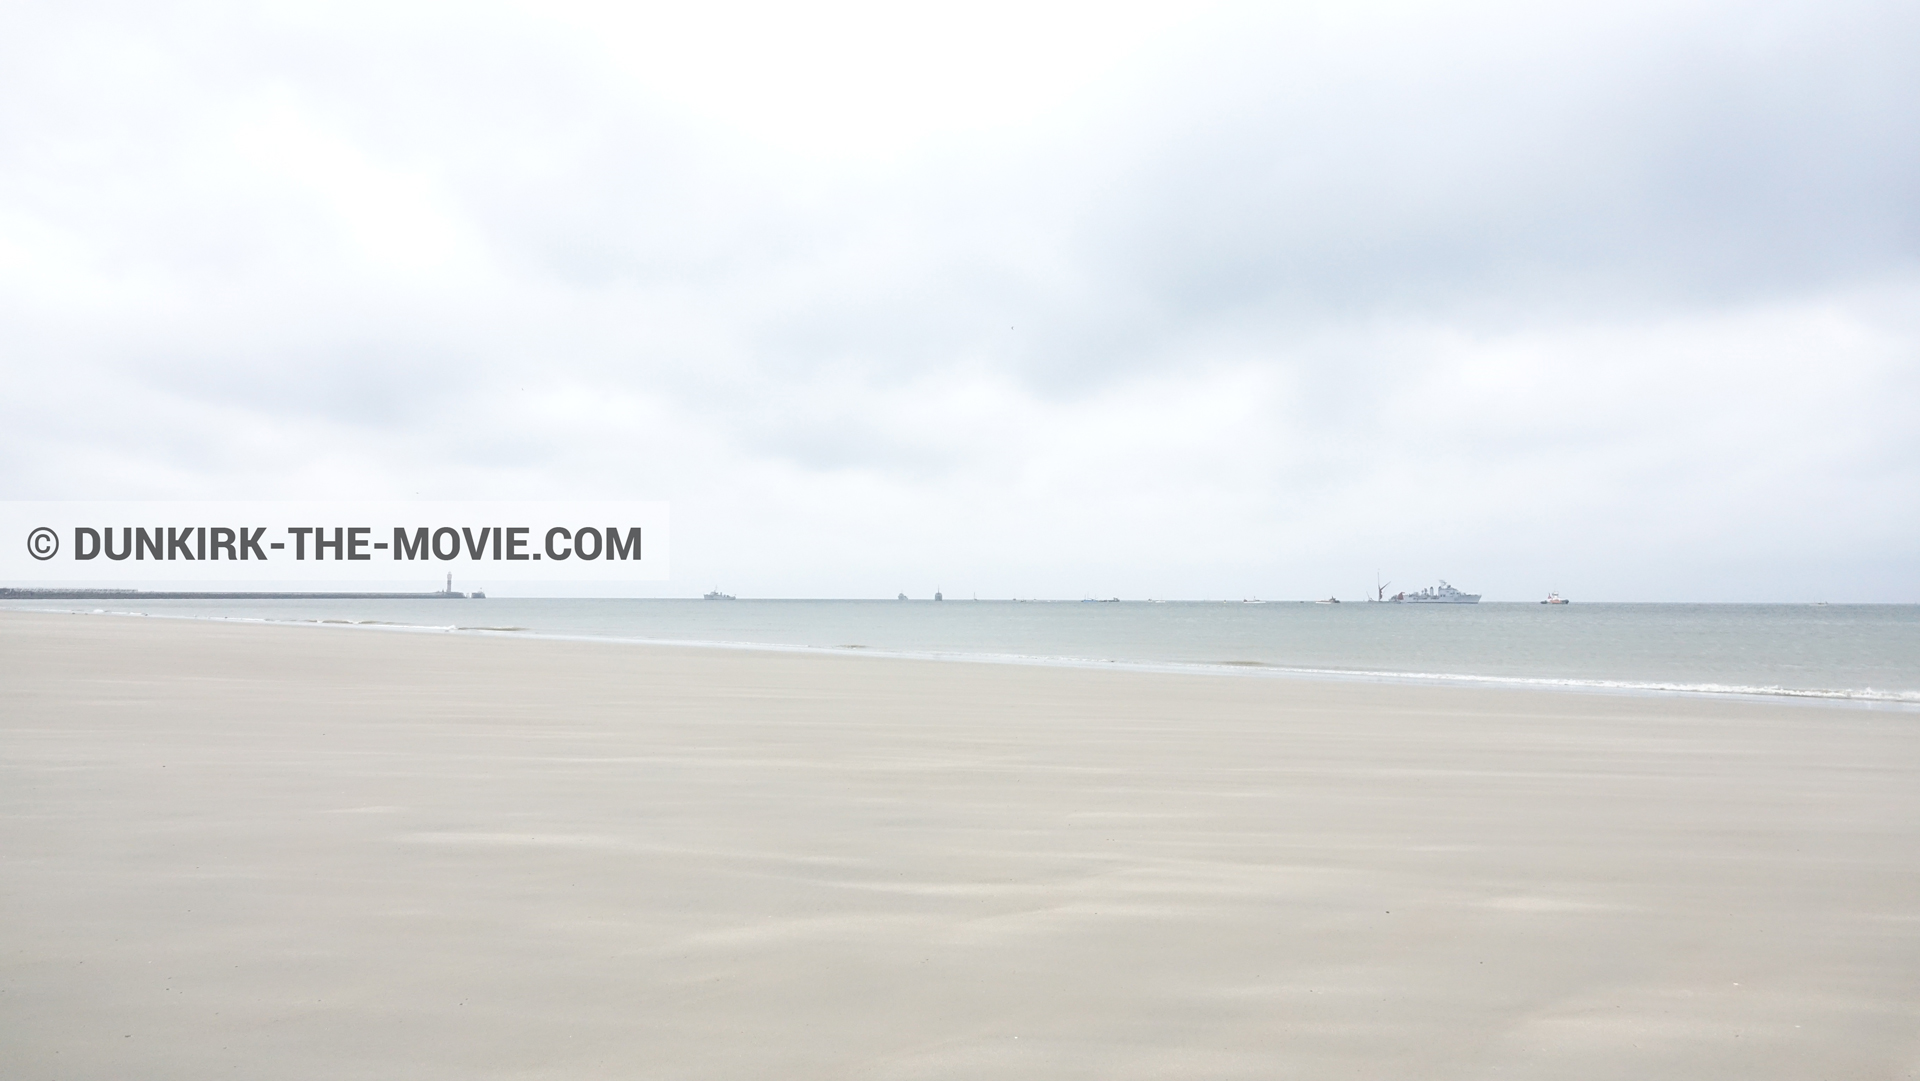 Fotos con barco, cielo nublado, playa,  durante el rodaje de la película Dunkerque de Nolan